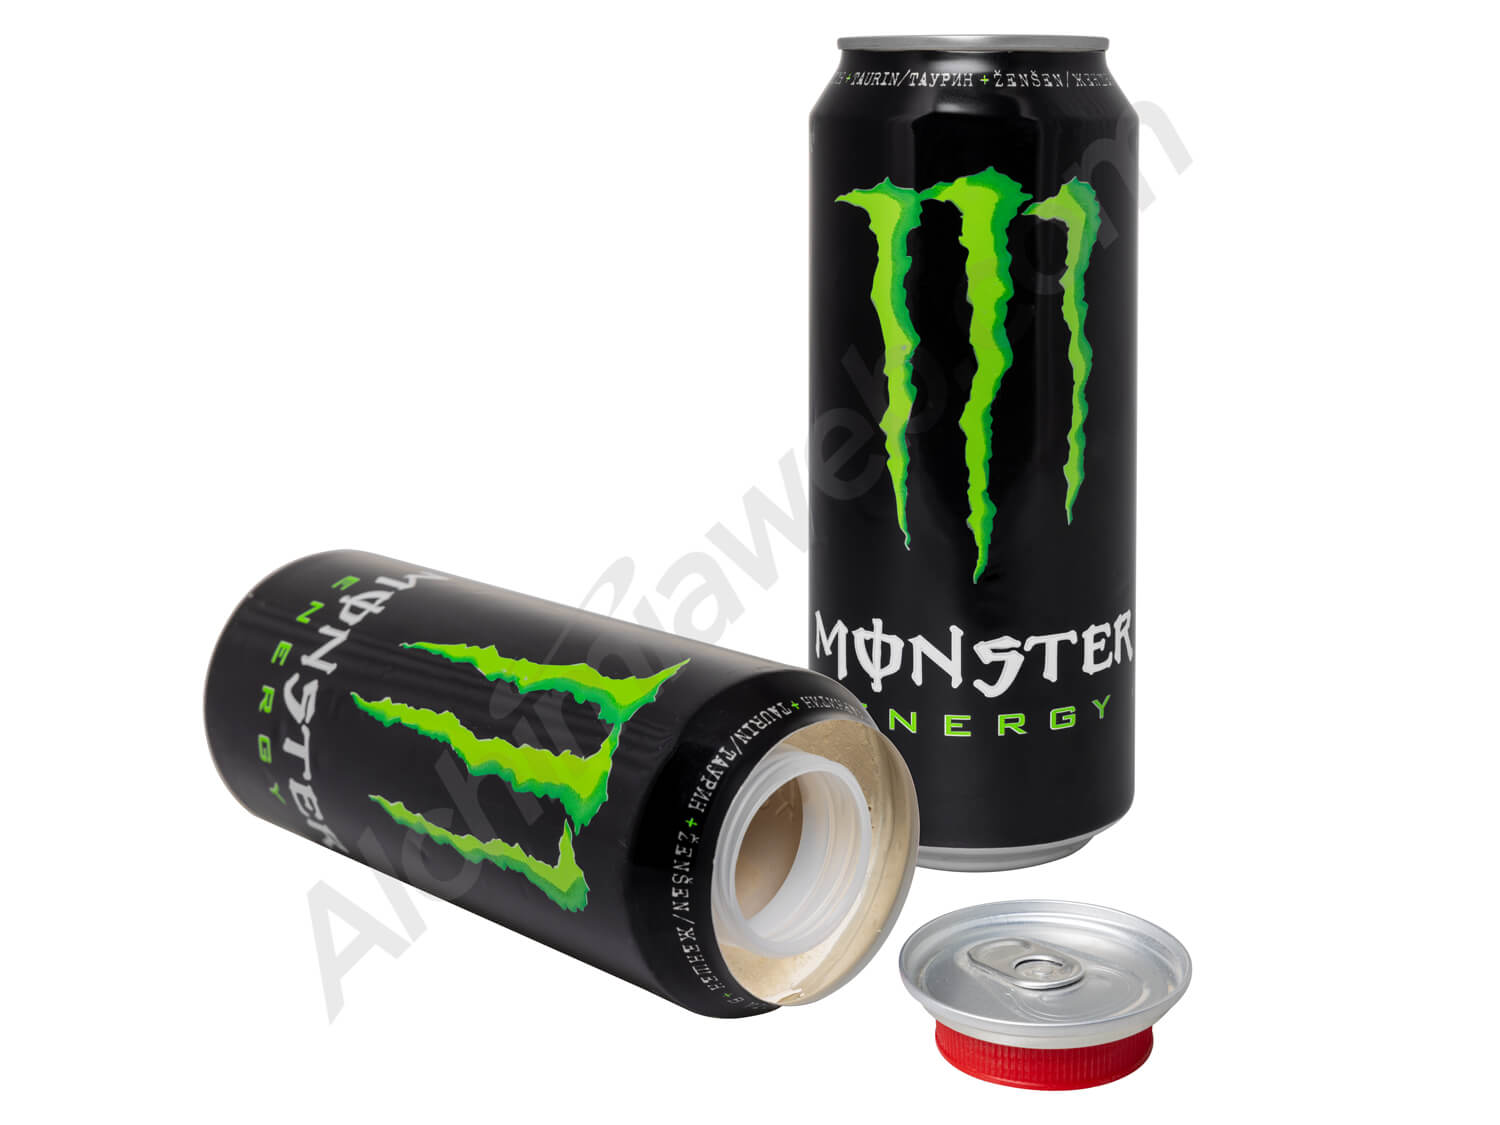 Canette Monster Energy avec cachette